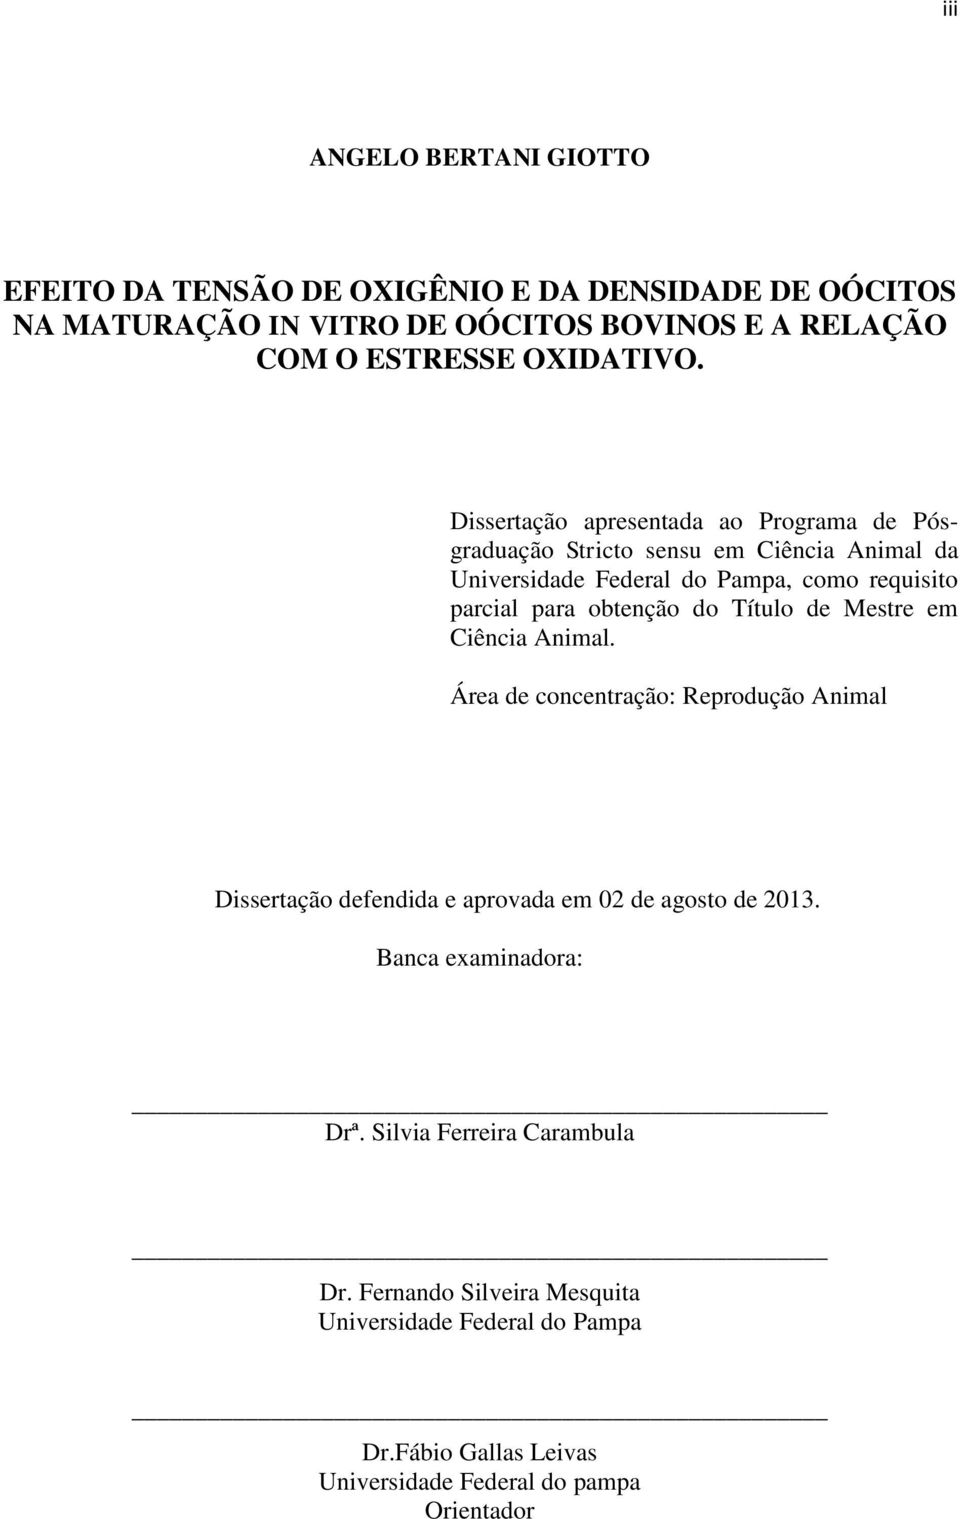 Dissertação apresentada ao Programa de Pósgraduação Stricto sensu em Ciência Animal da Universidade Federal do Pampa, como requisito parcial para obtenção